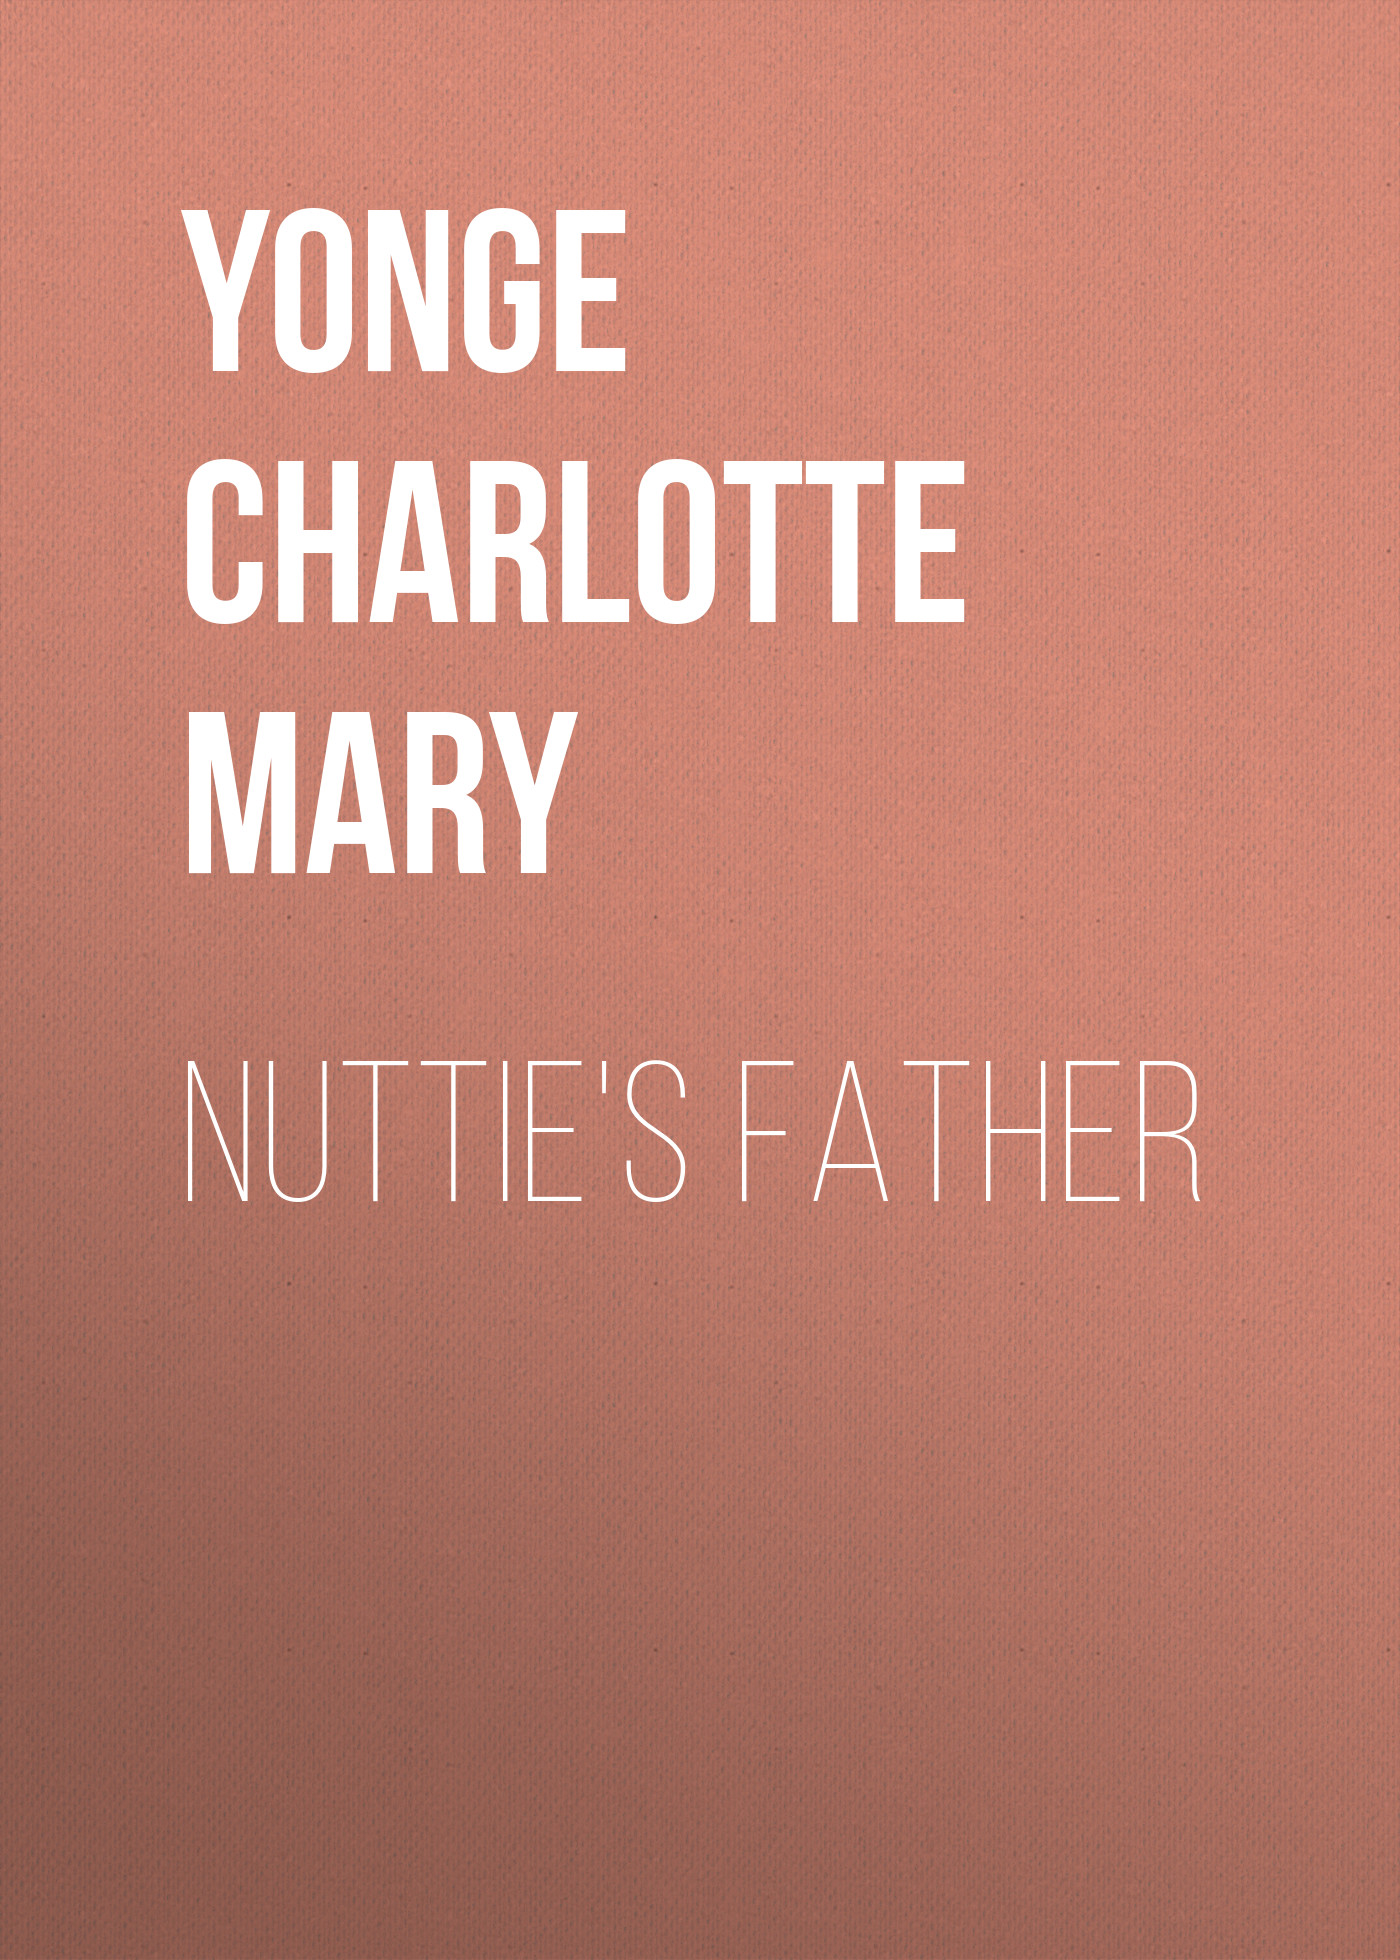 Книга Nuttie's Father из серии , созданная Charlotte Yonge, может относится к жанру Зарубежная классика, Литература 19 века, Европейская старинная литература, Зарубежная старинная литература. Стоимость электронной книги Nuttie's Father с идентификатором 36095157 составляет 0 руб.